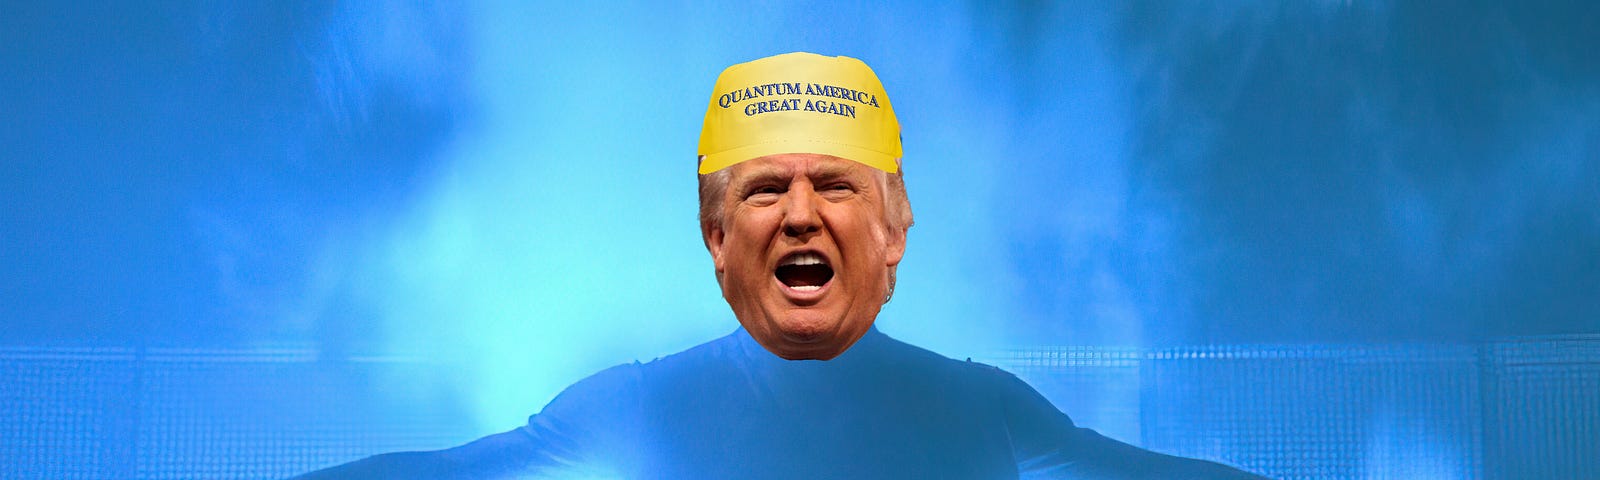 Donald Trump quantum leaping